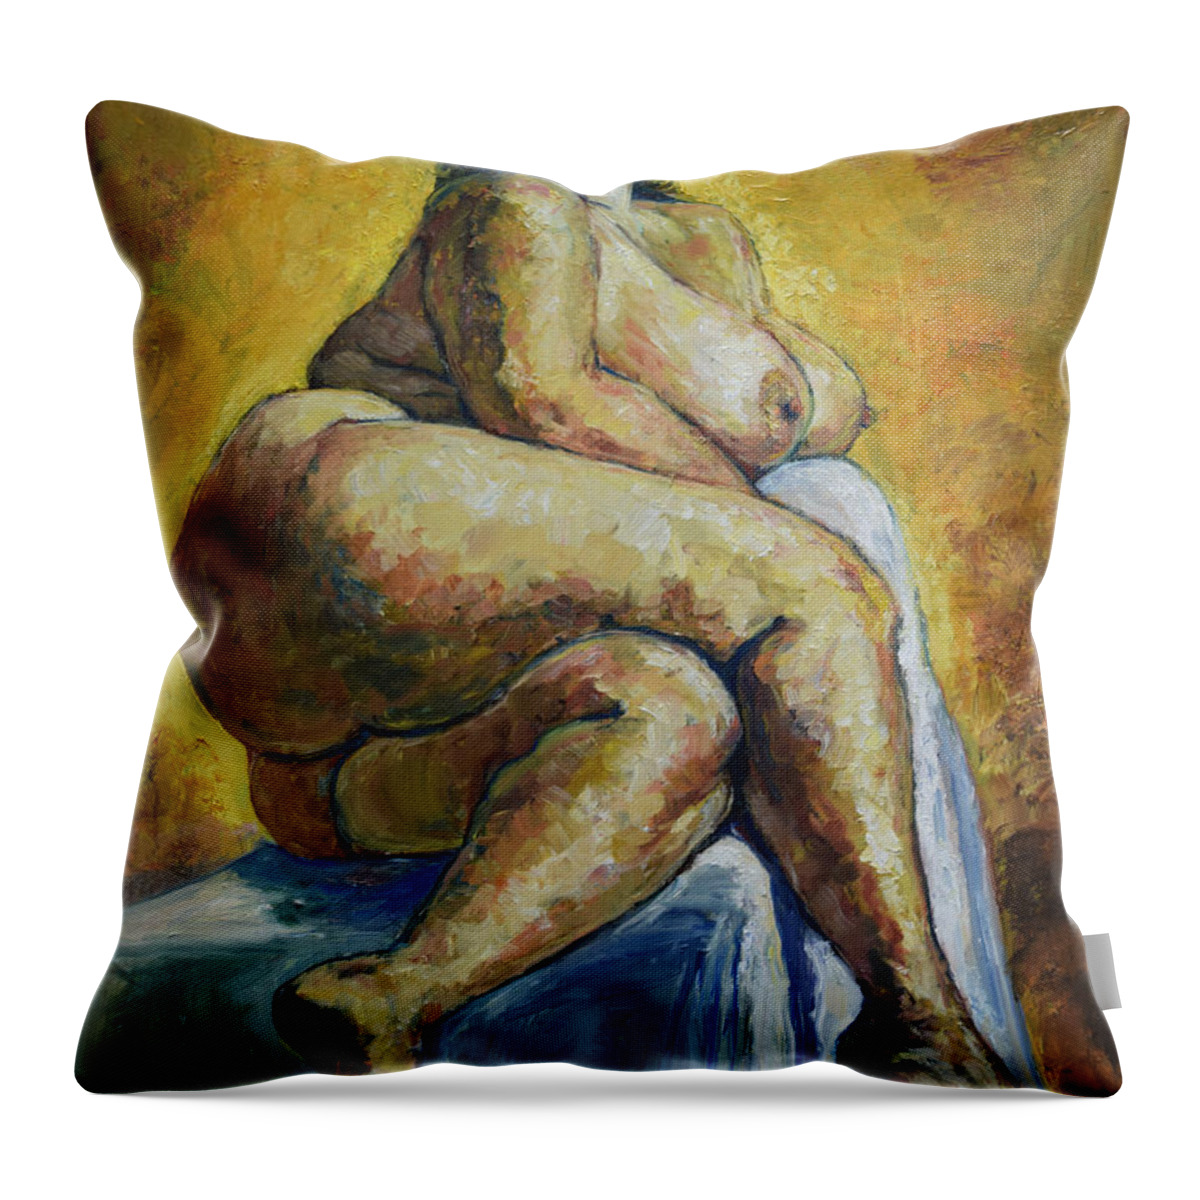 Raija Merila Throw Pillow featuring the painting Big Woman by Raija Merila